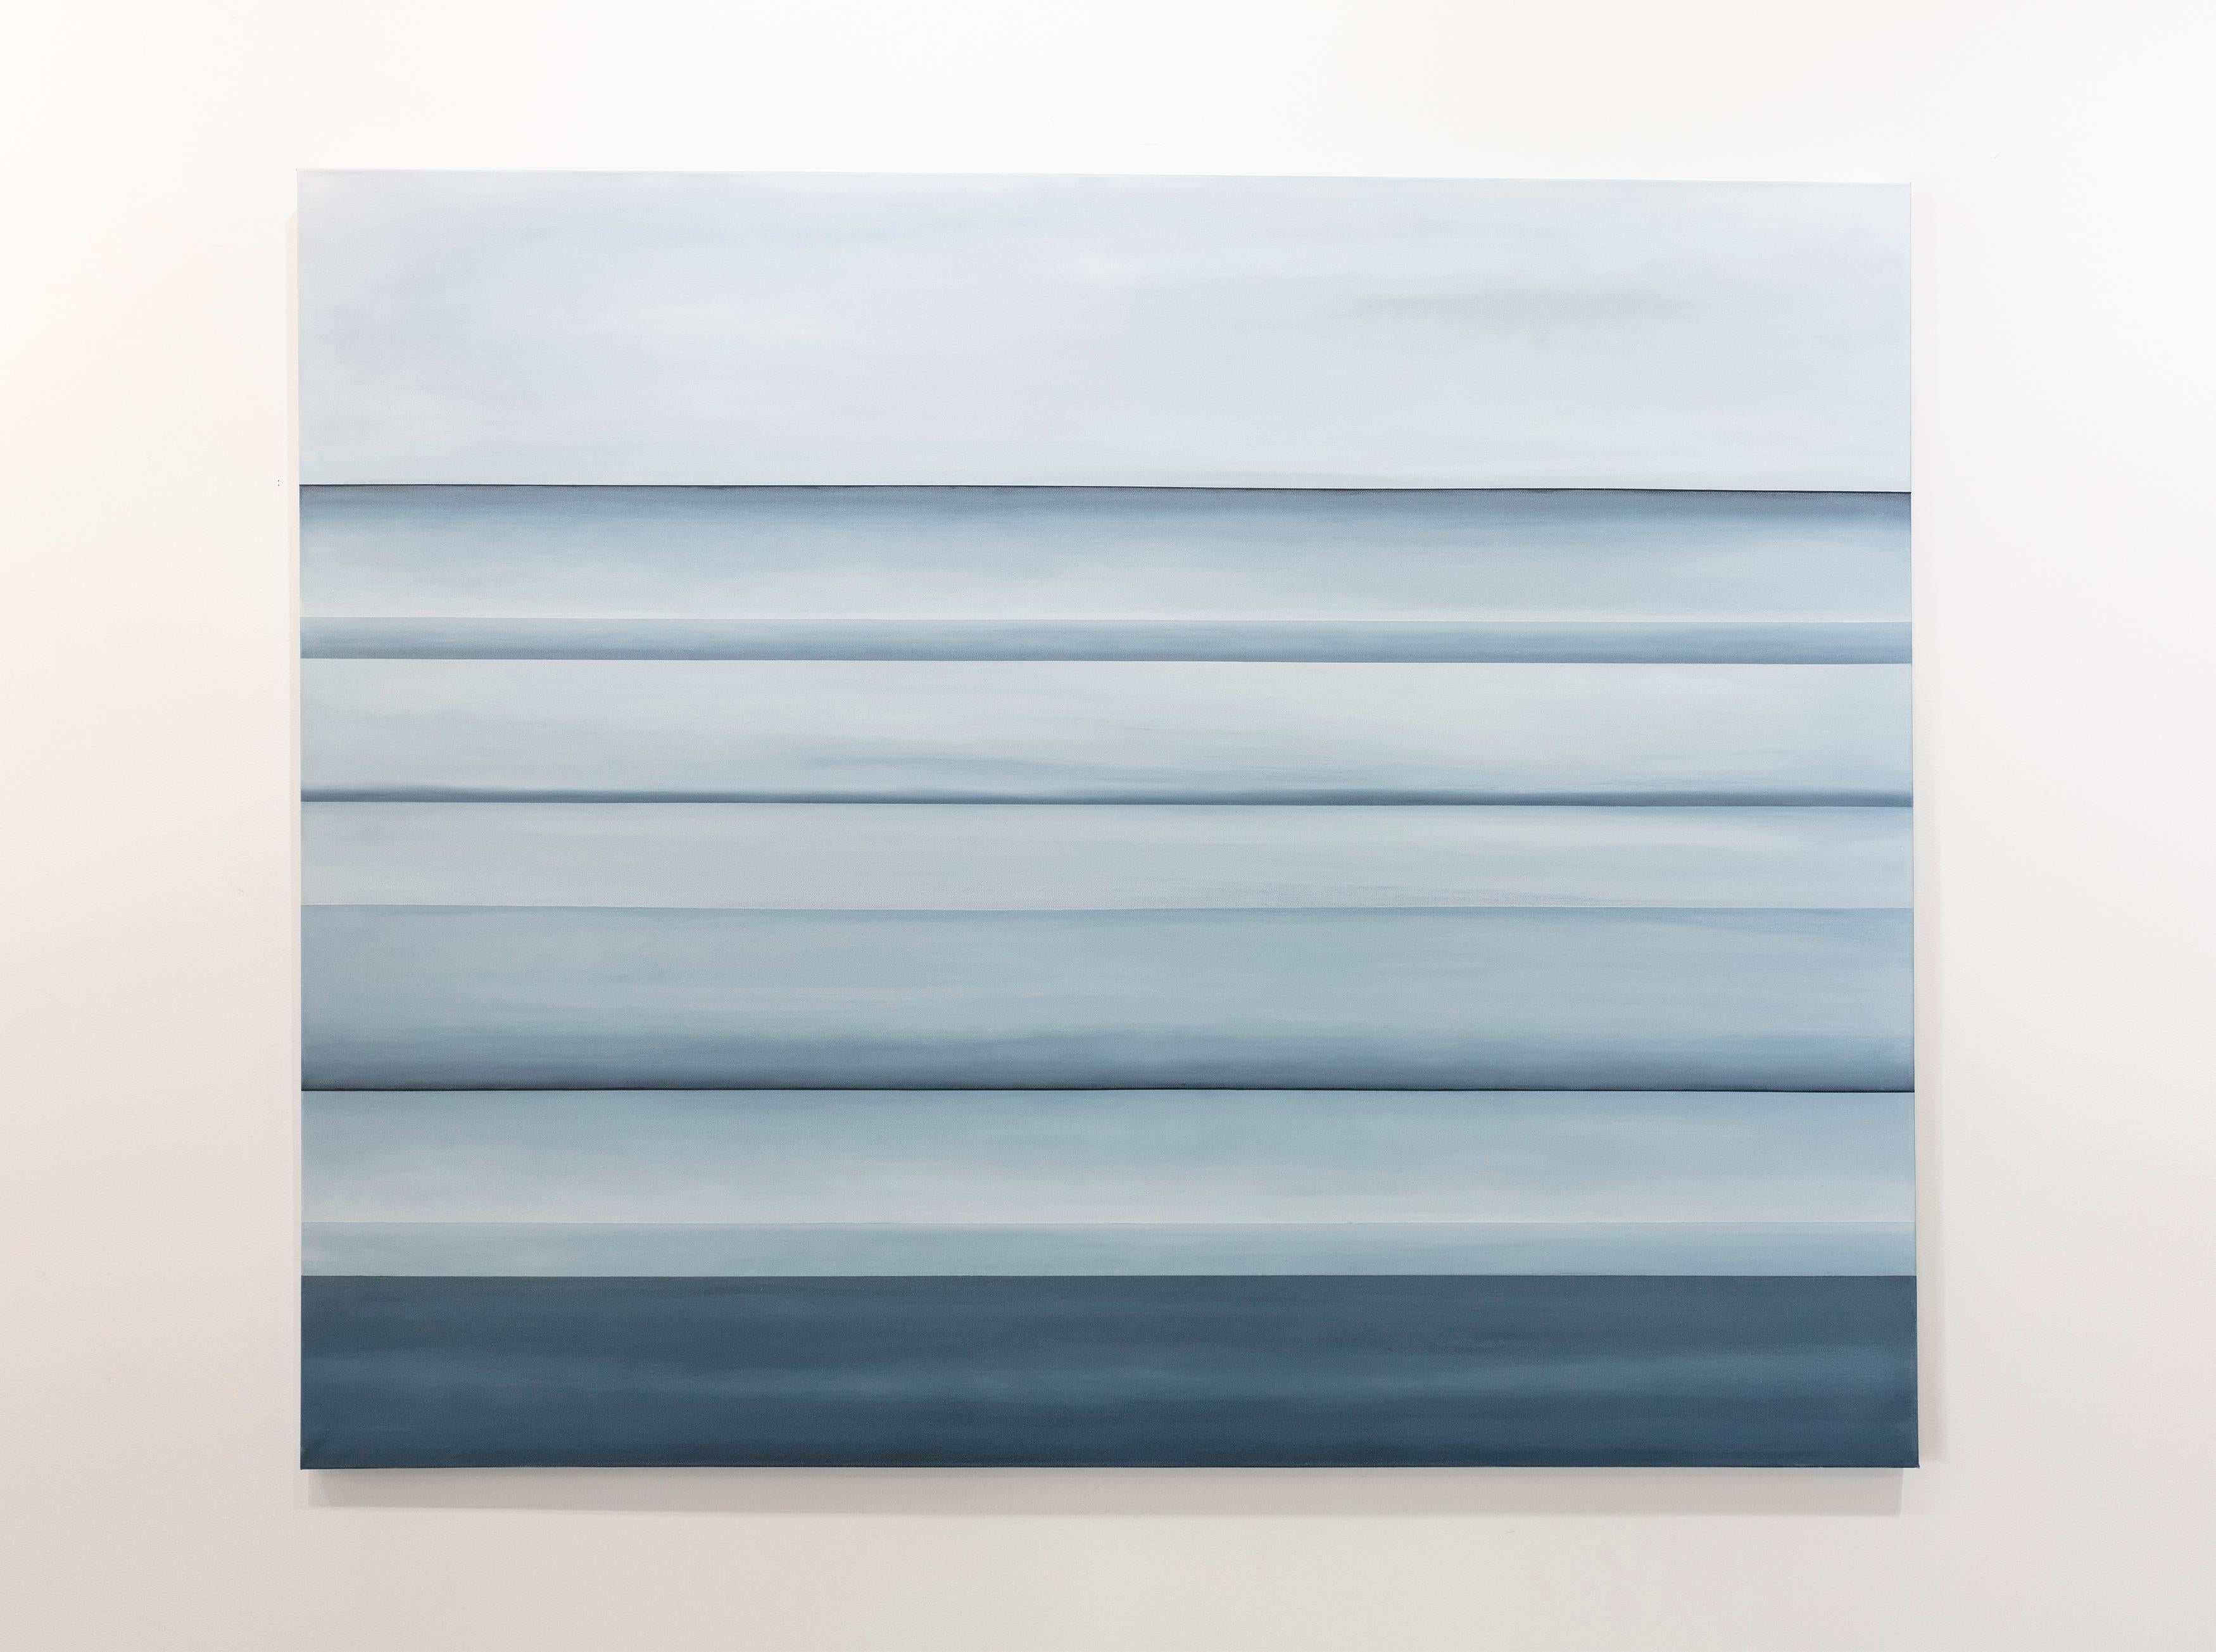 Dieses abstrakte Gemälde von Tony Iadicicco ist mit Ölfarbe auf Leinwand gemalt und zeigt eine blaue, monochromatische Palette. Das Gemälde hat eine abstrahierte Landschaftskomposition mit strengen Horizontlinien, die sich durch die Leinwand ziehen,